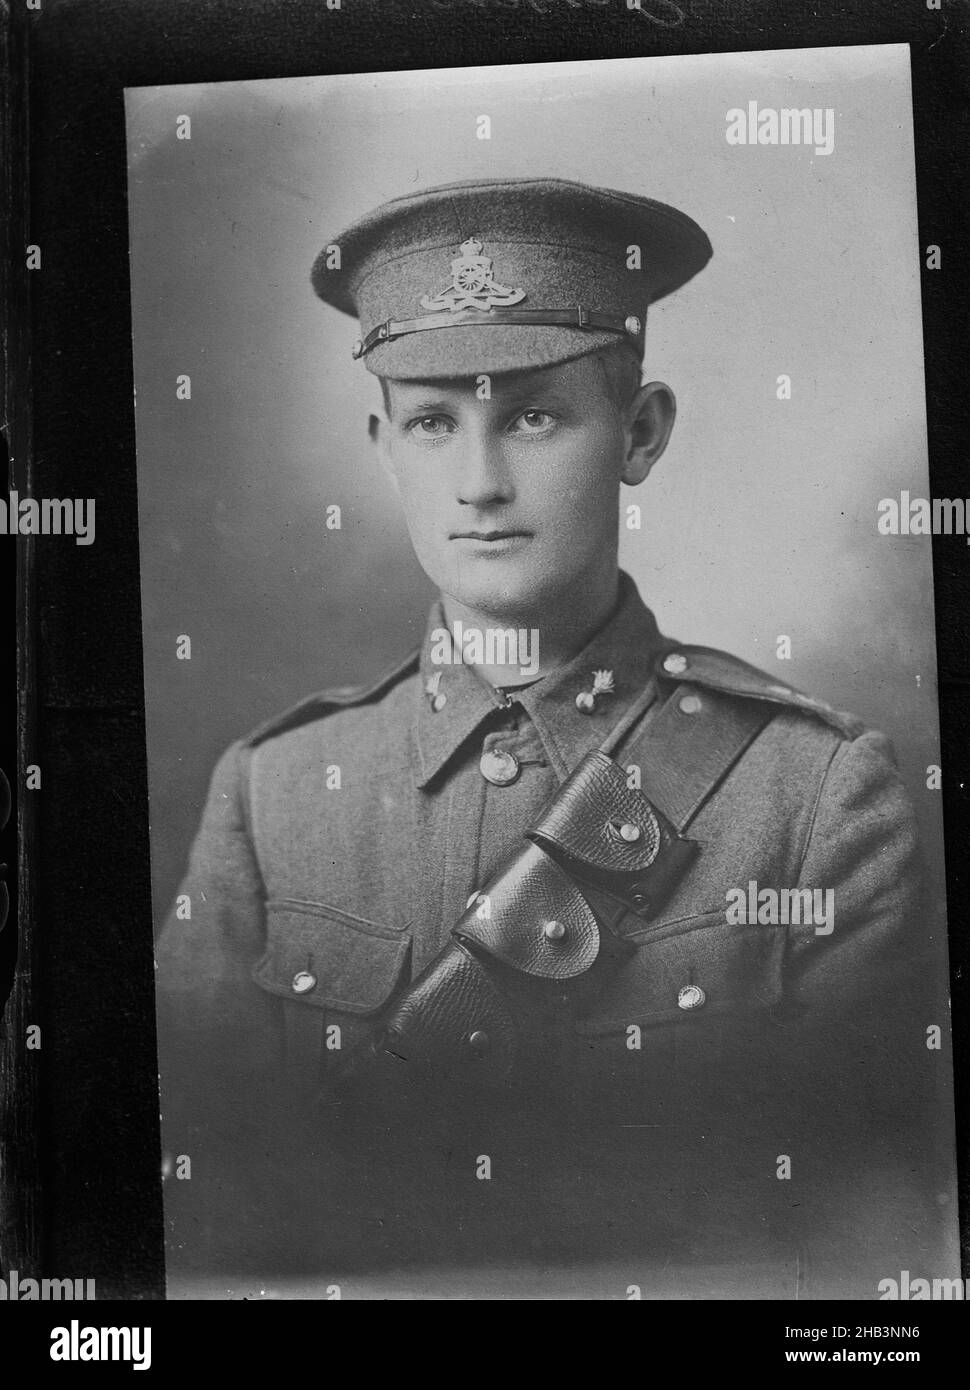 Kopie eines Porträts von Donald Jessen, Berry & Co, Kopist, um 1920, Wellington, Schwarzweiß-Fotografie, Donald Jessen, Dienstnummer 2/2848 Stockfoto